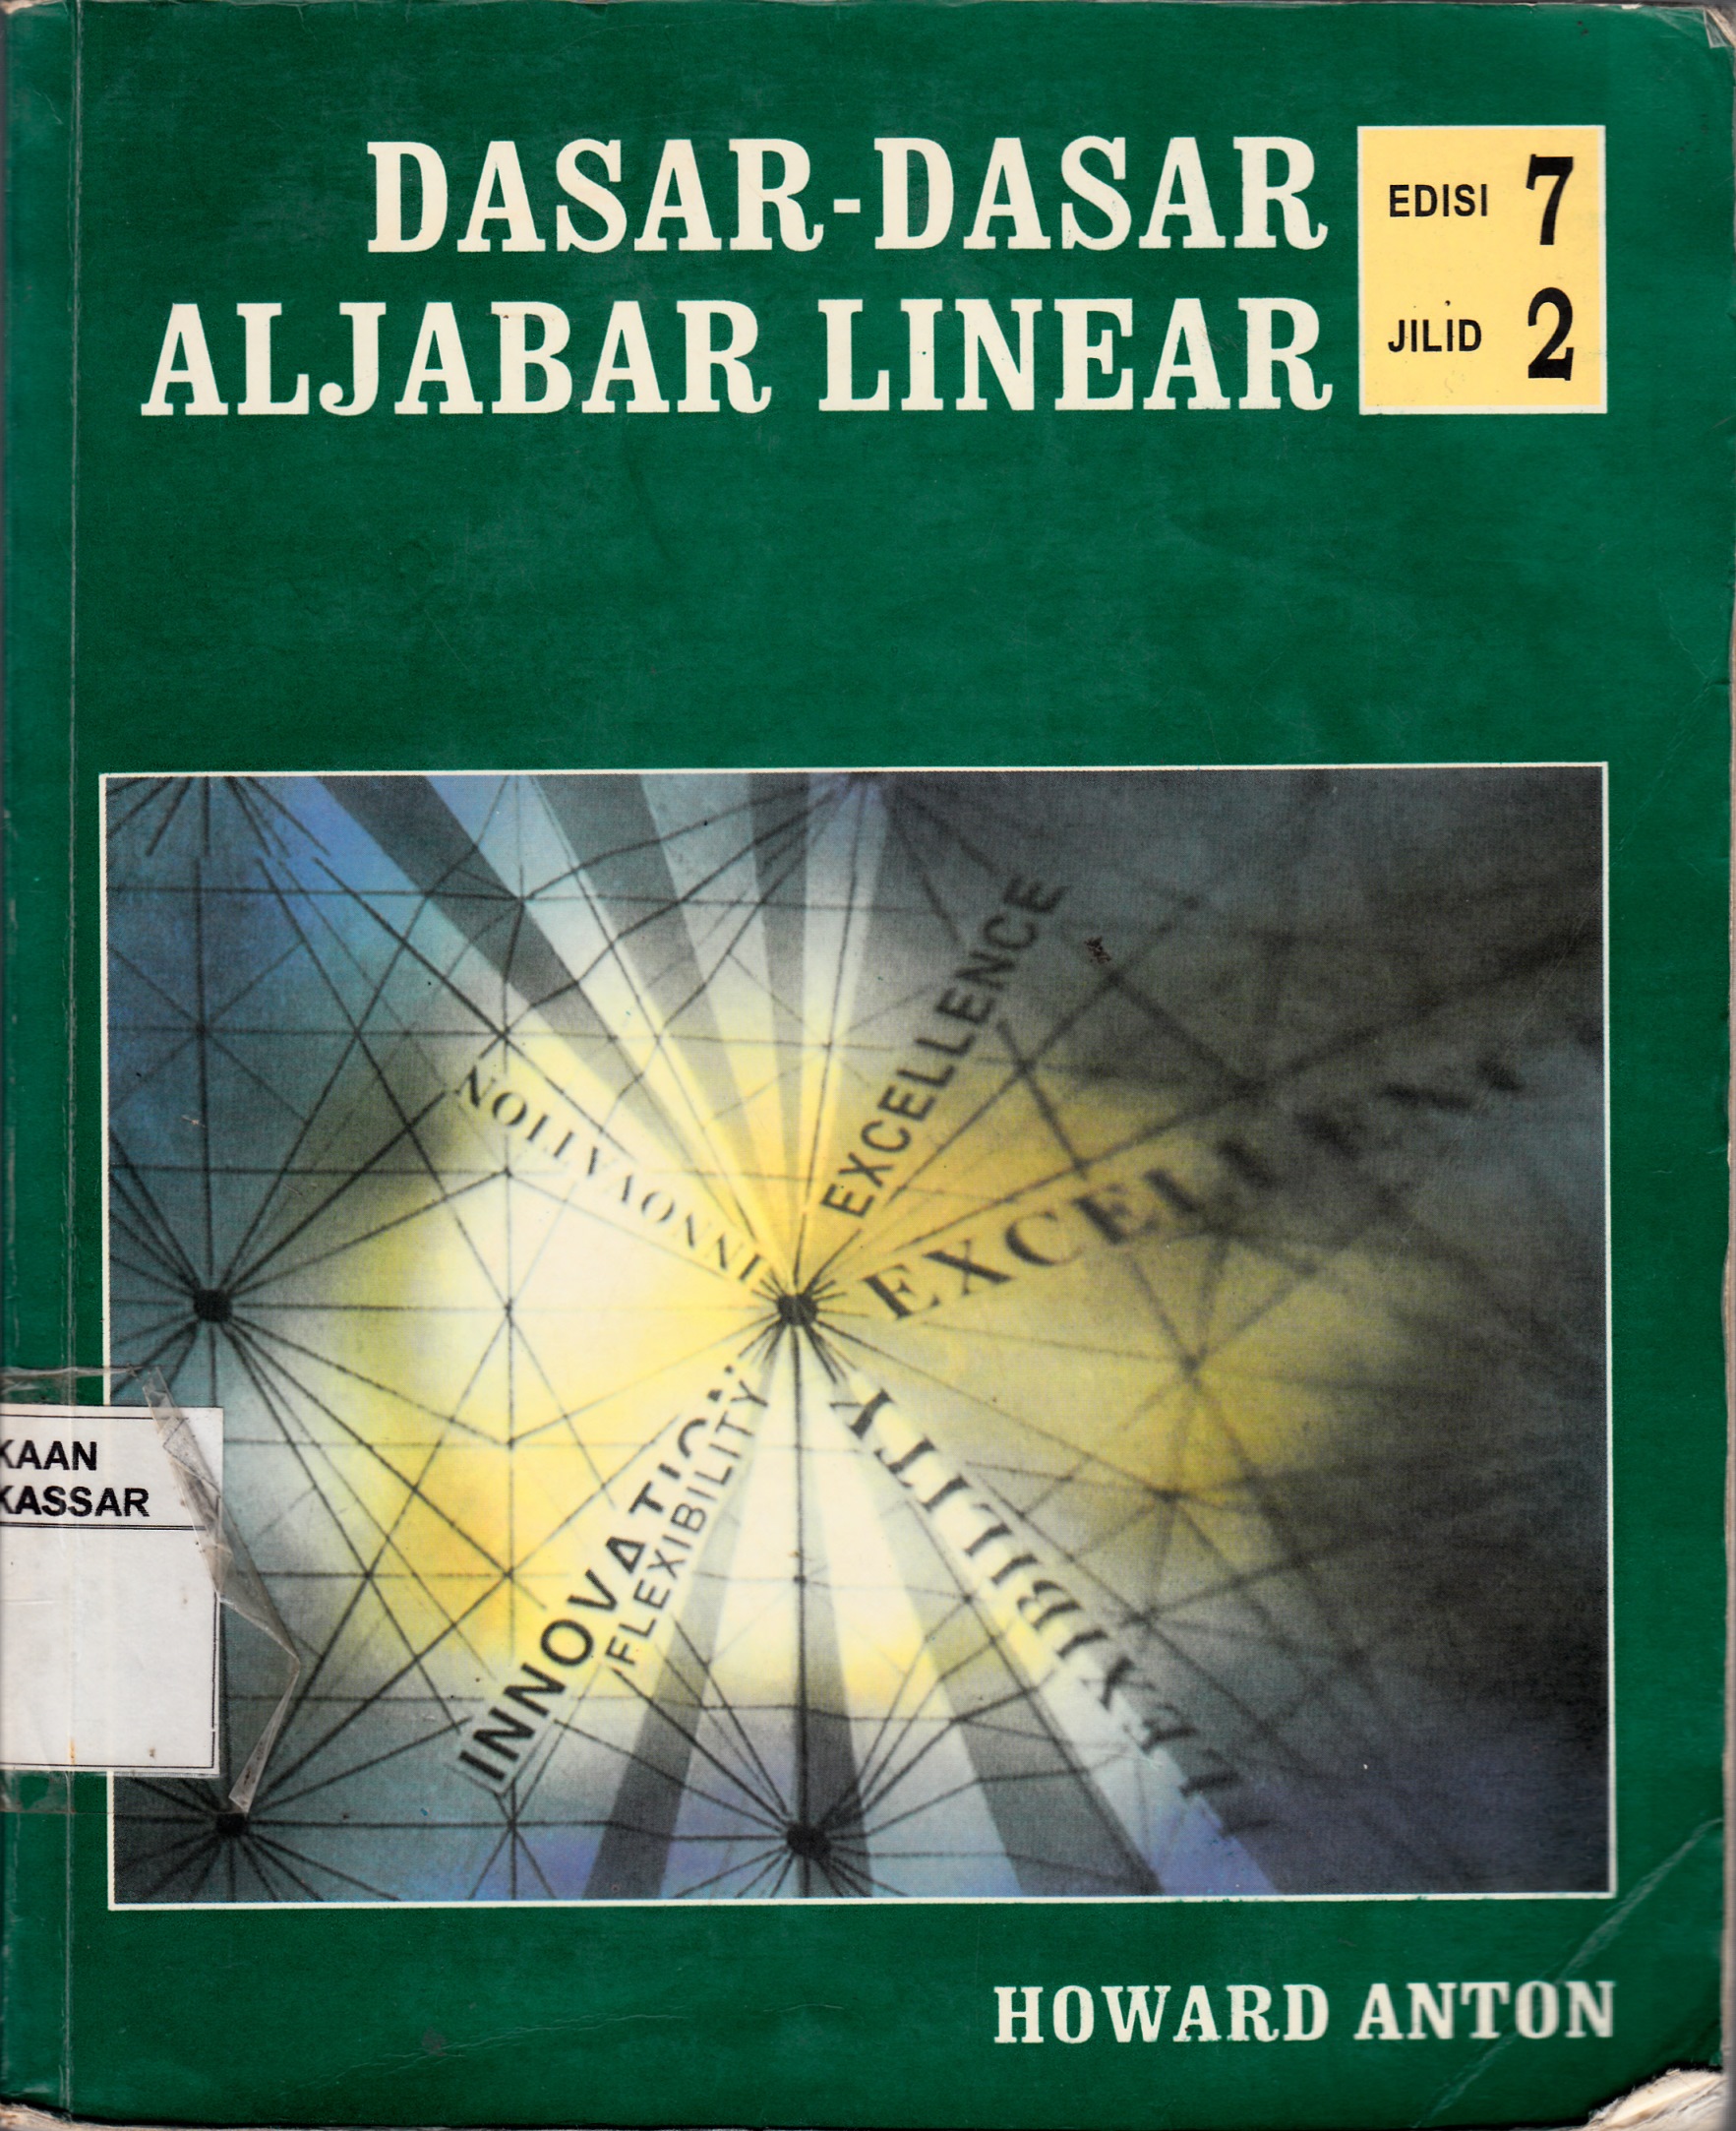 Dasar-dasar aljabar linear jilid 2